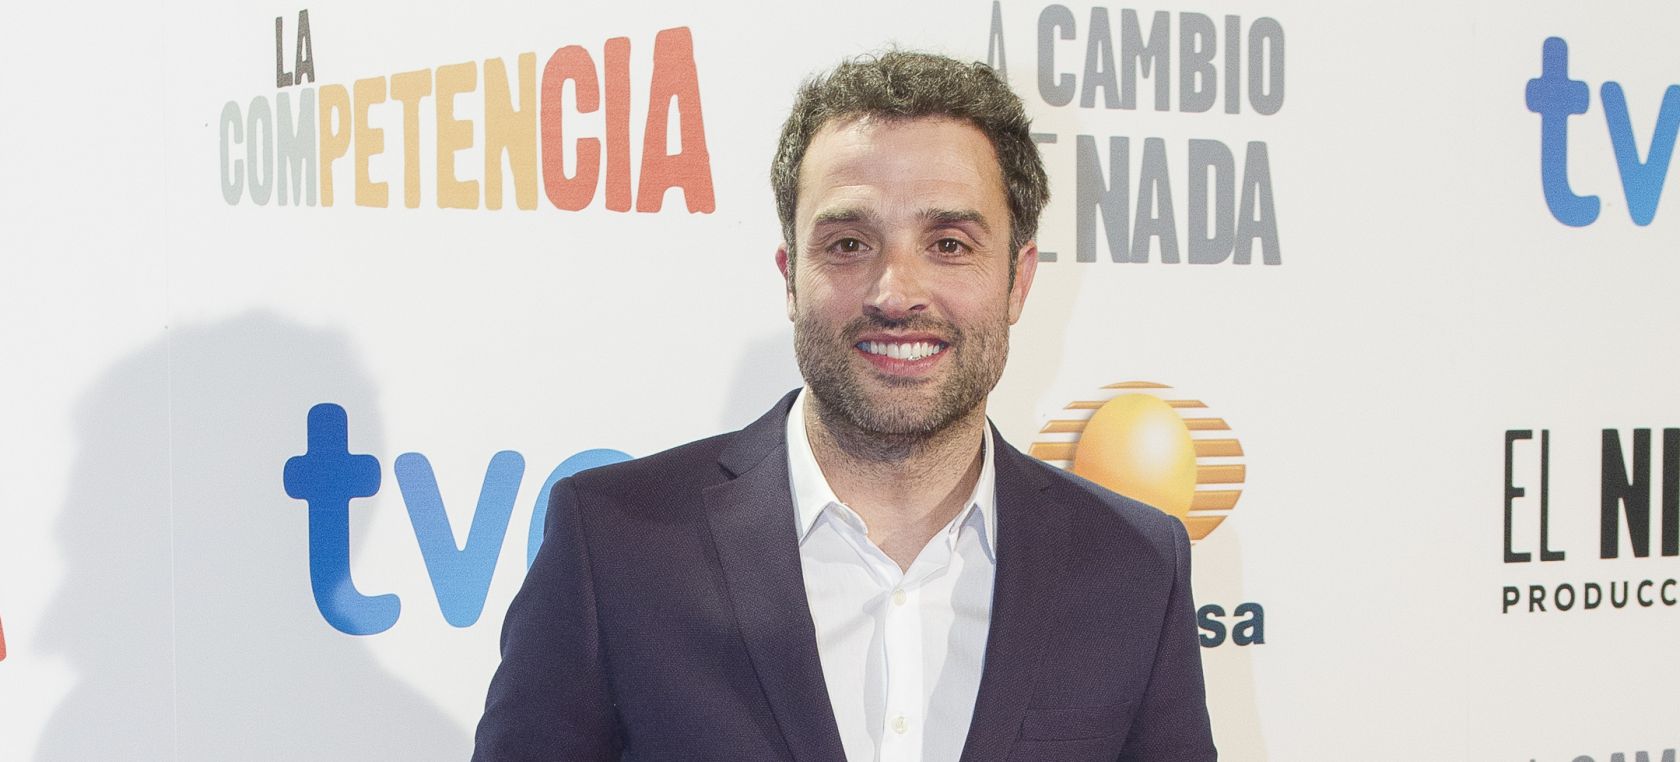 Daniel Guzmán, Carlos Bardem y otras estrellas de cine se vuelcan en la campaña electoral de UP